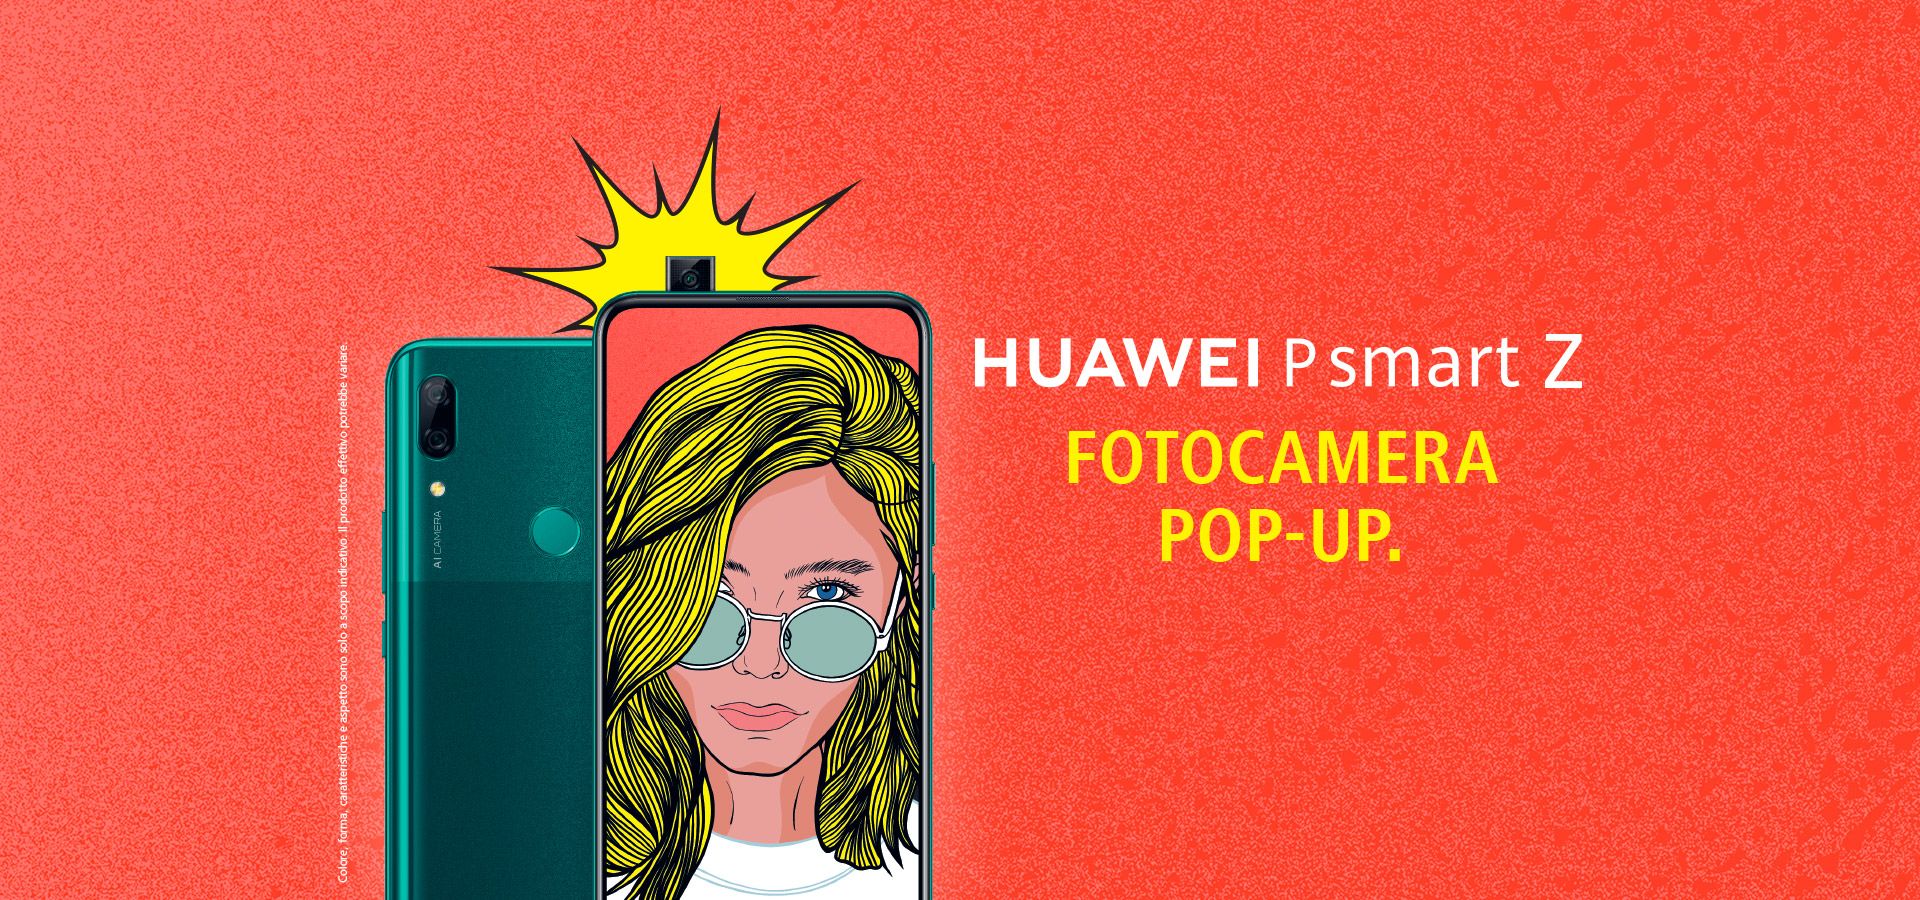 เปิดตัว Huawei P Smart Z (Y9 Prime 2019) มือถือจอใหญ่ไร้ขอบ 6.59 นิ้ว และกล้องหน้าเด้งได้รุ่นแรกของ Huawei